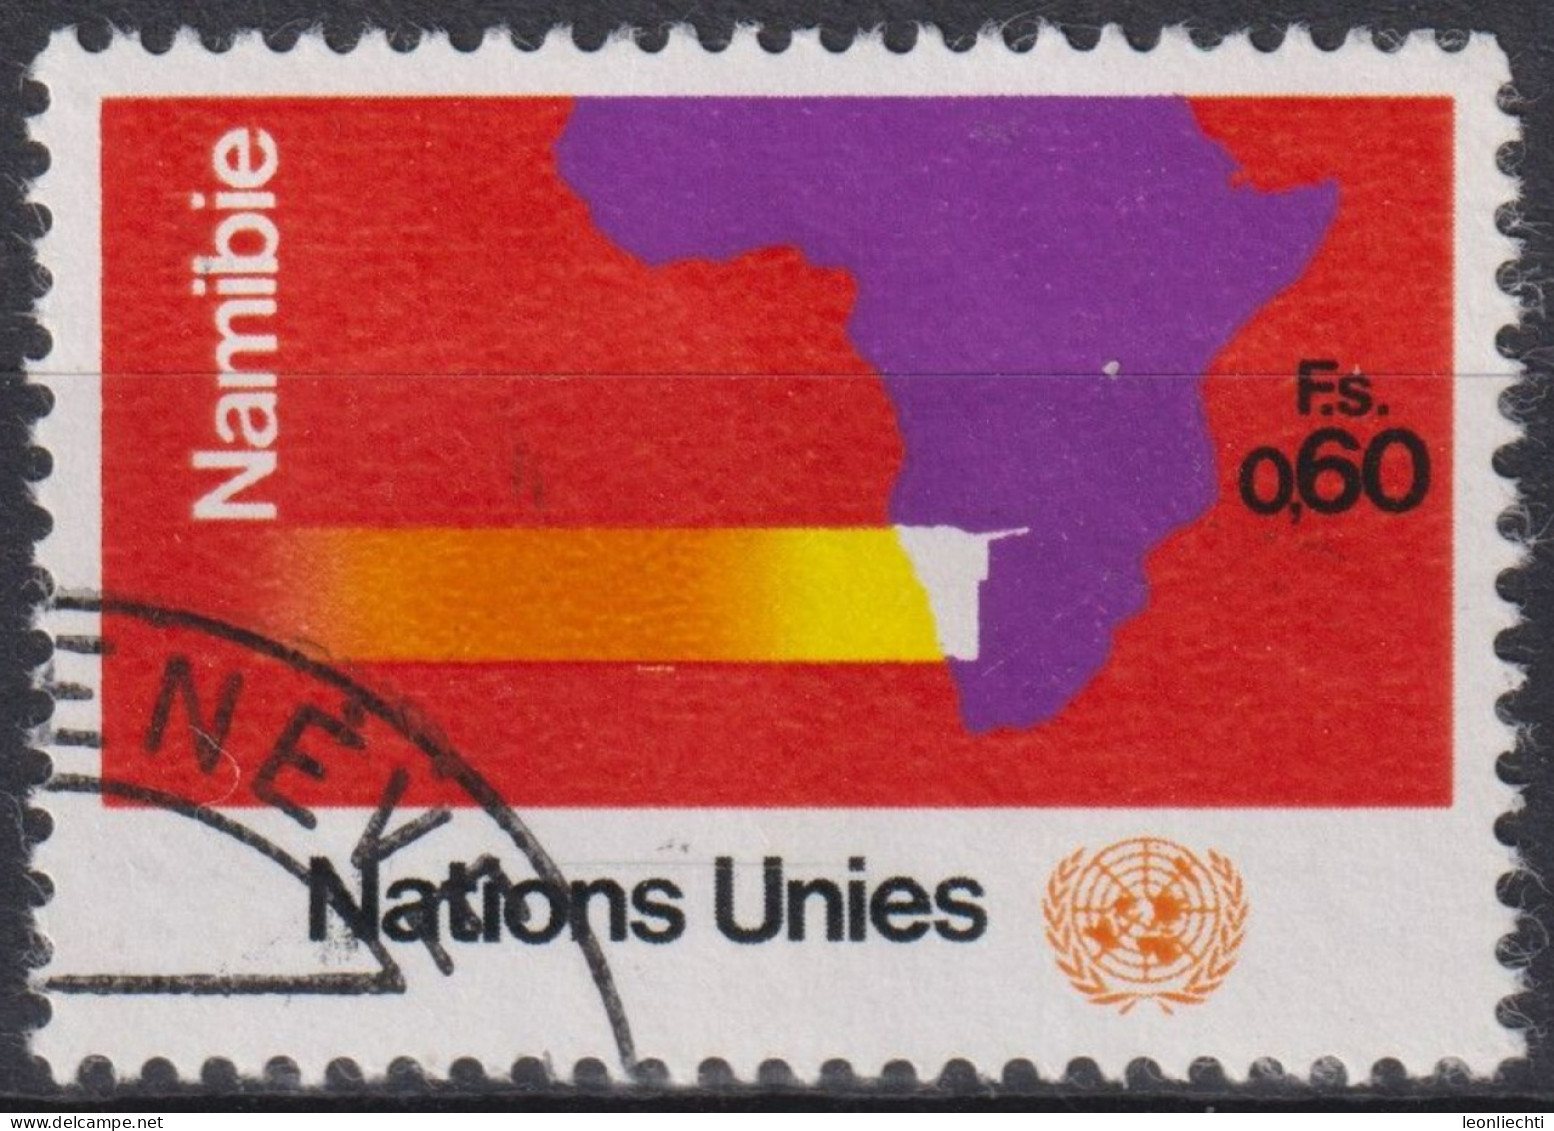 1973 UNO Genf ° Mi:NT-GE 34, Yt:NT-GE 34, Zum:NT-GE 34, Namibia, Landkarte Afrika Mit Namibia - Used Stamps